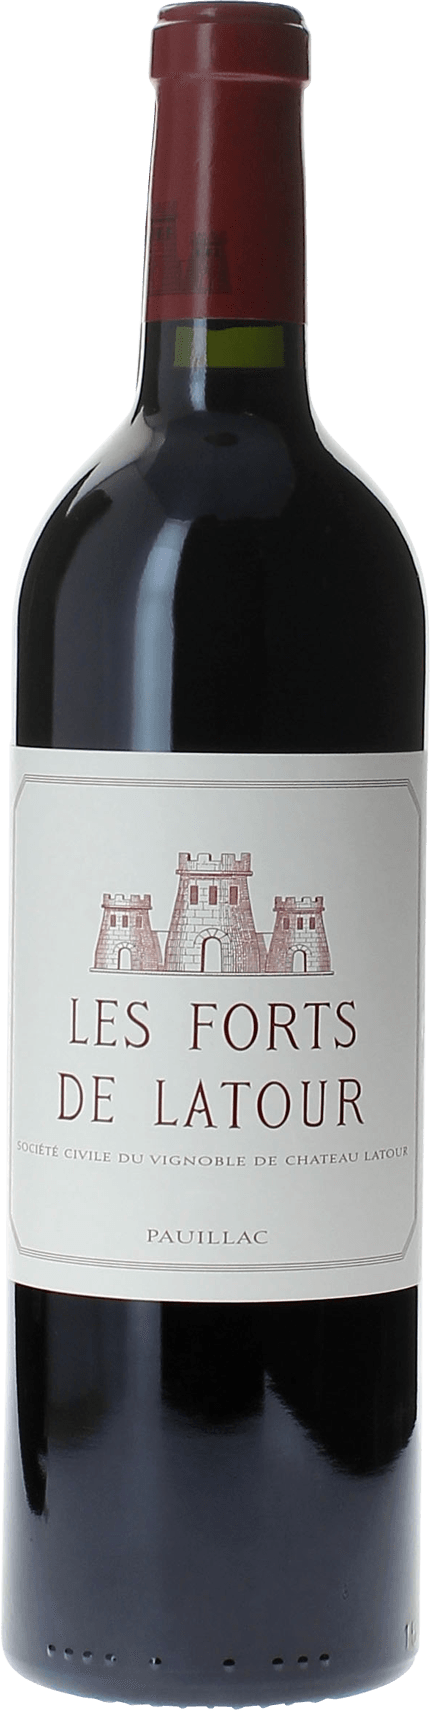 Les forts de latour 1981 2me vin de LATOUR Pauillac, Bordeaux rouge